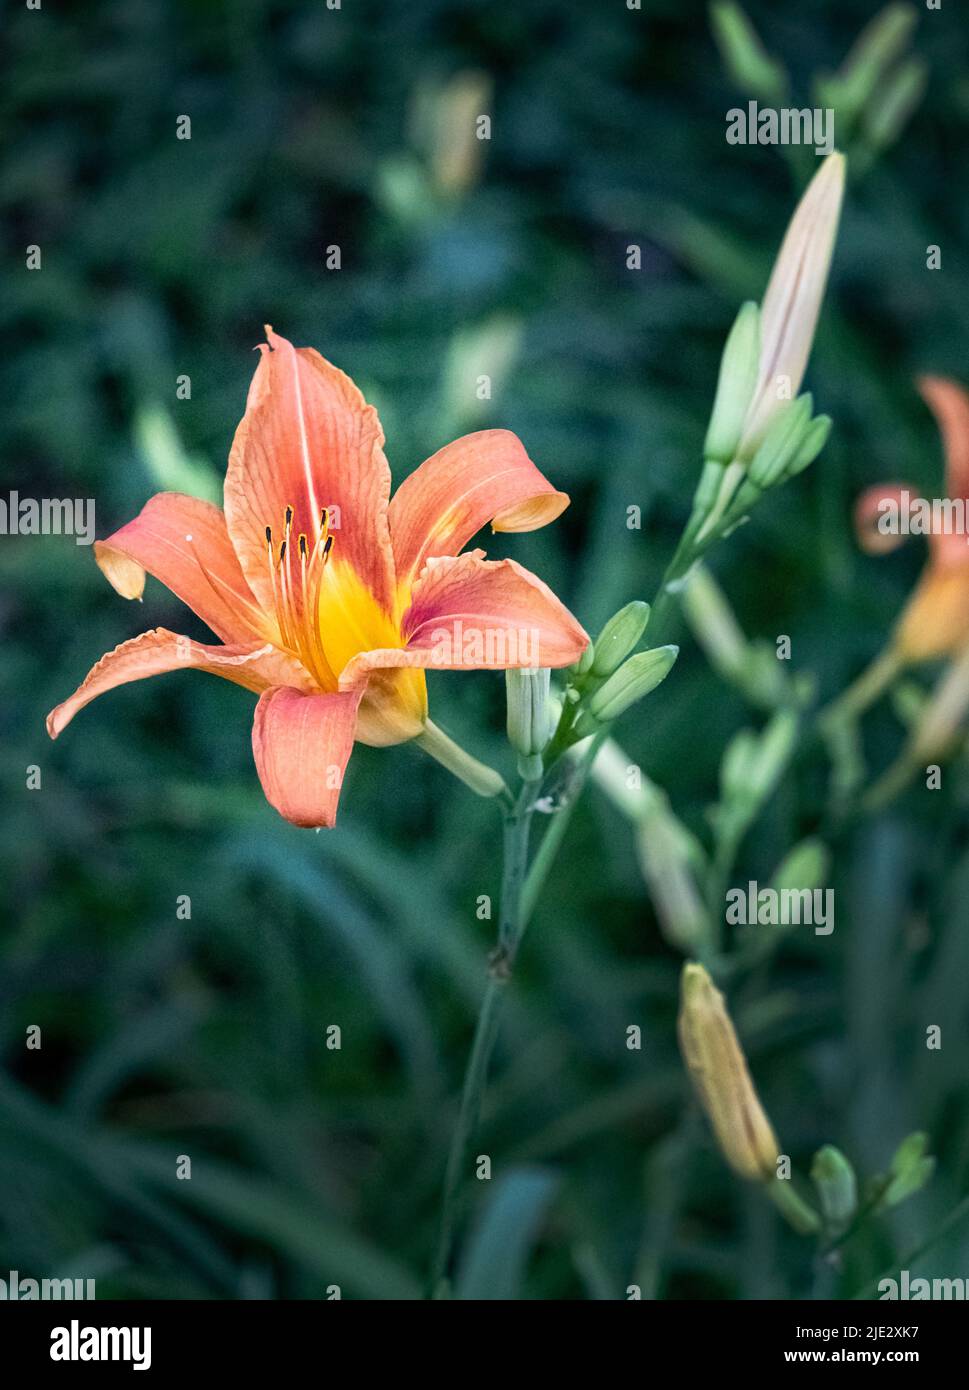 Un día anaranjado lirio o lirio tigre, Lilium lancifolium, brillando en la luz del sol endulzada en un fondo verde borroso, primavera, verano, Pennsylvania Foto de stock